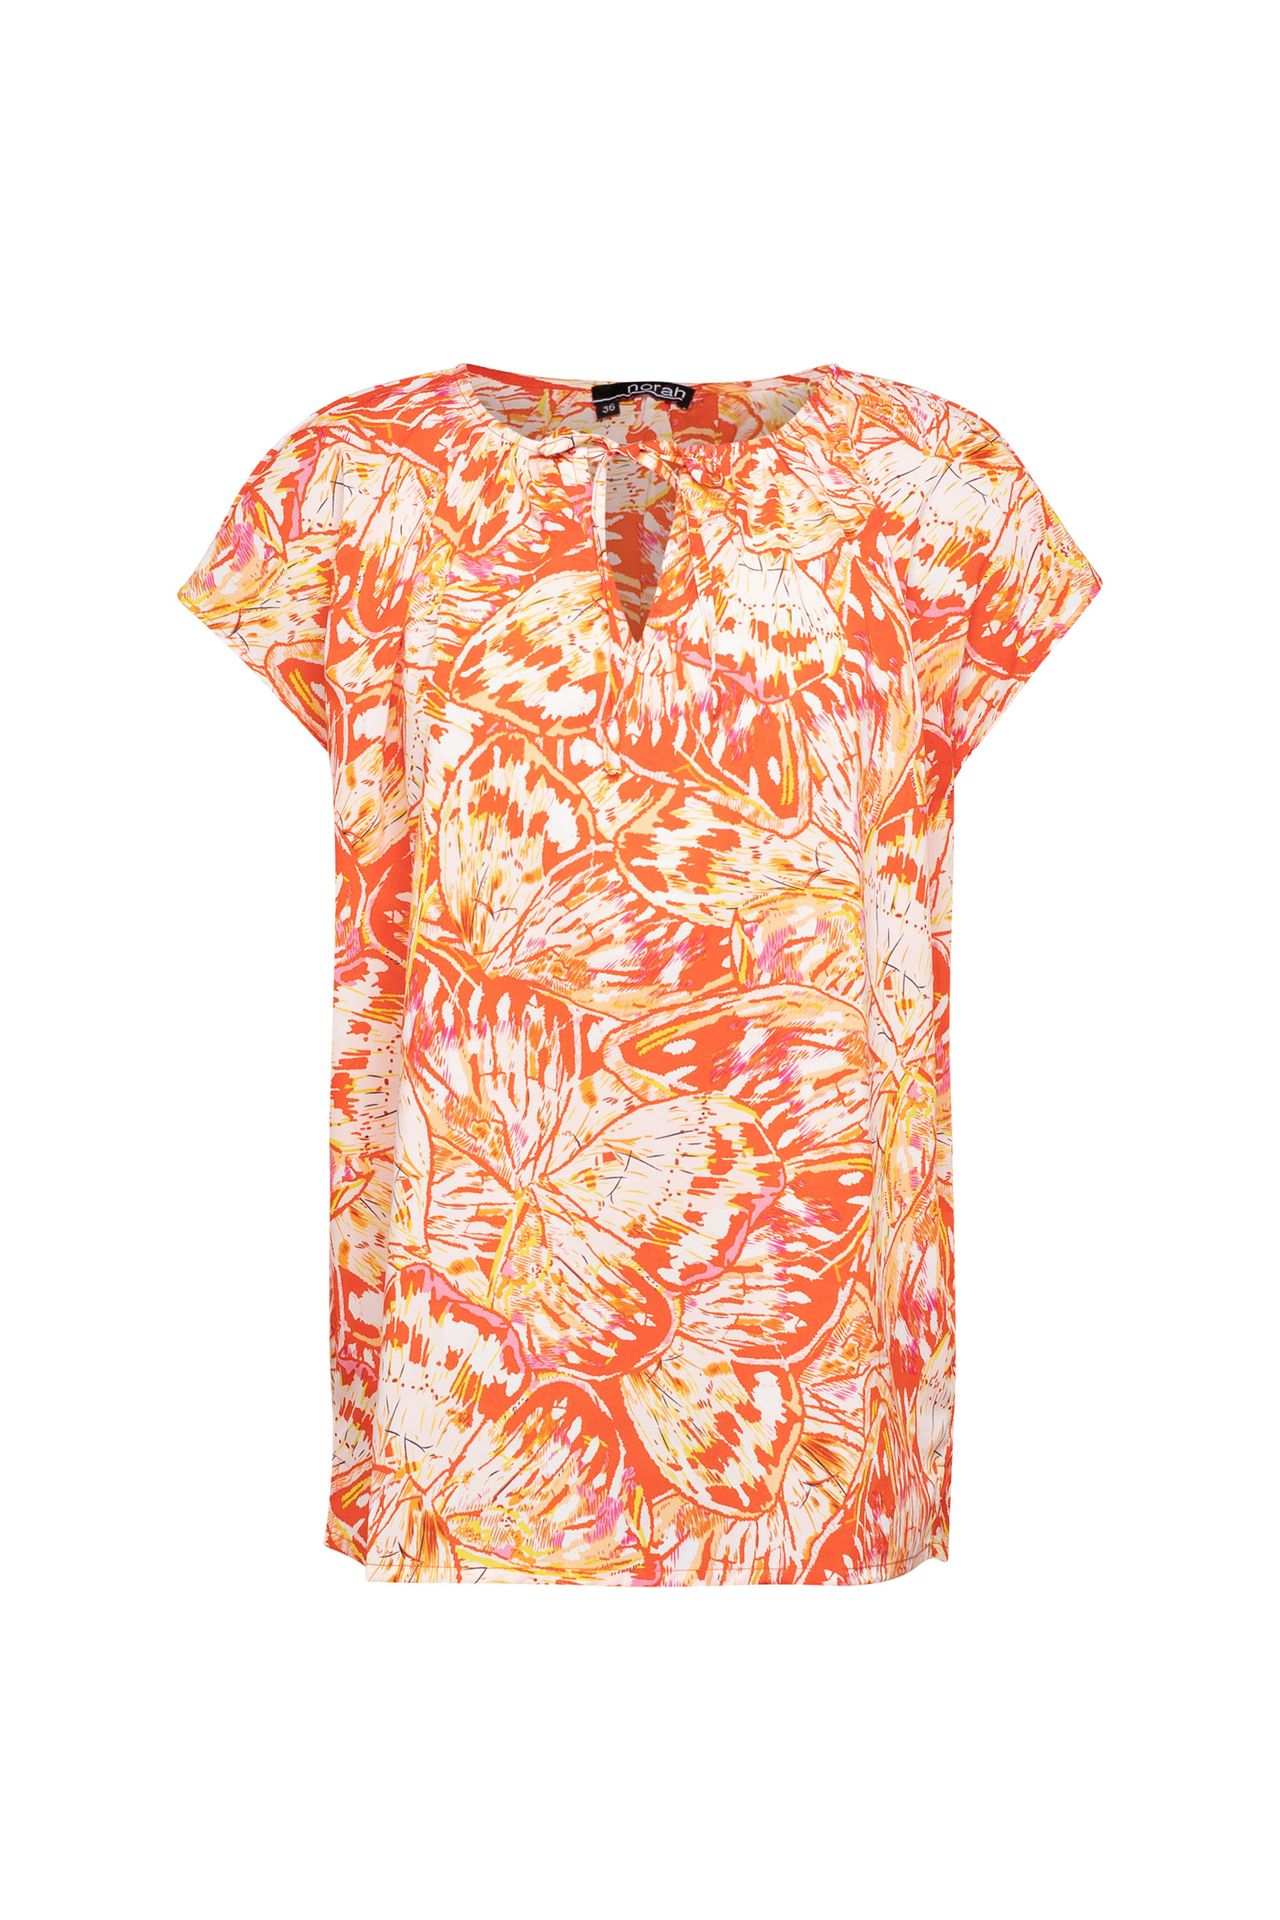 Norah Oranje blouse orange multicolor 212882-720